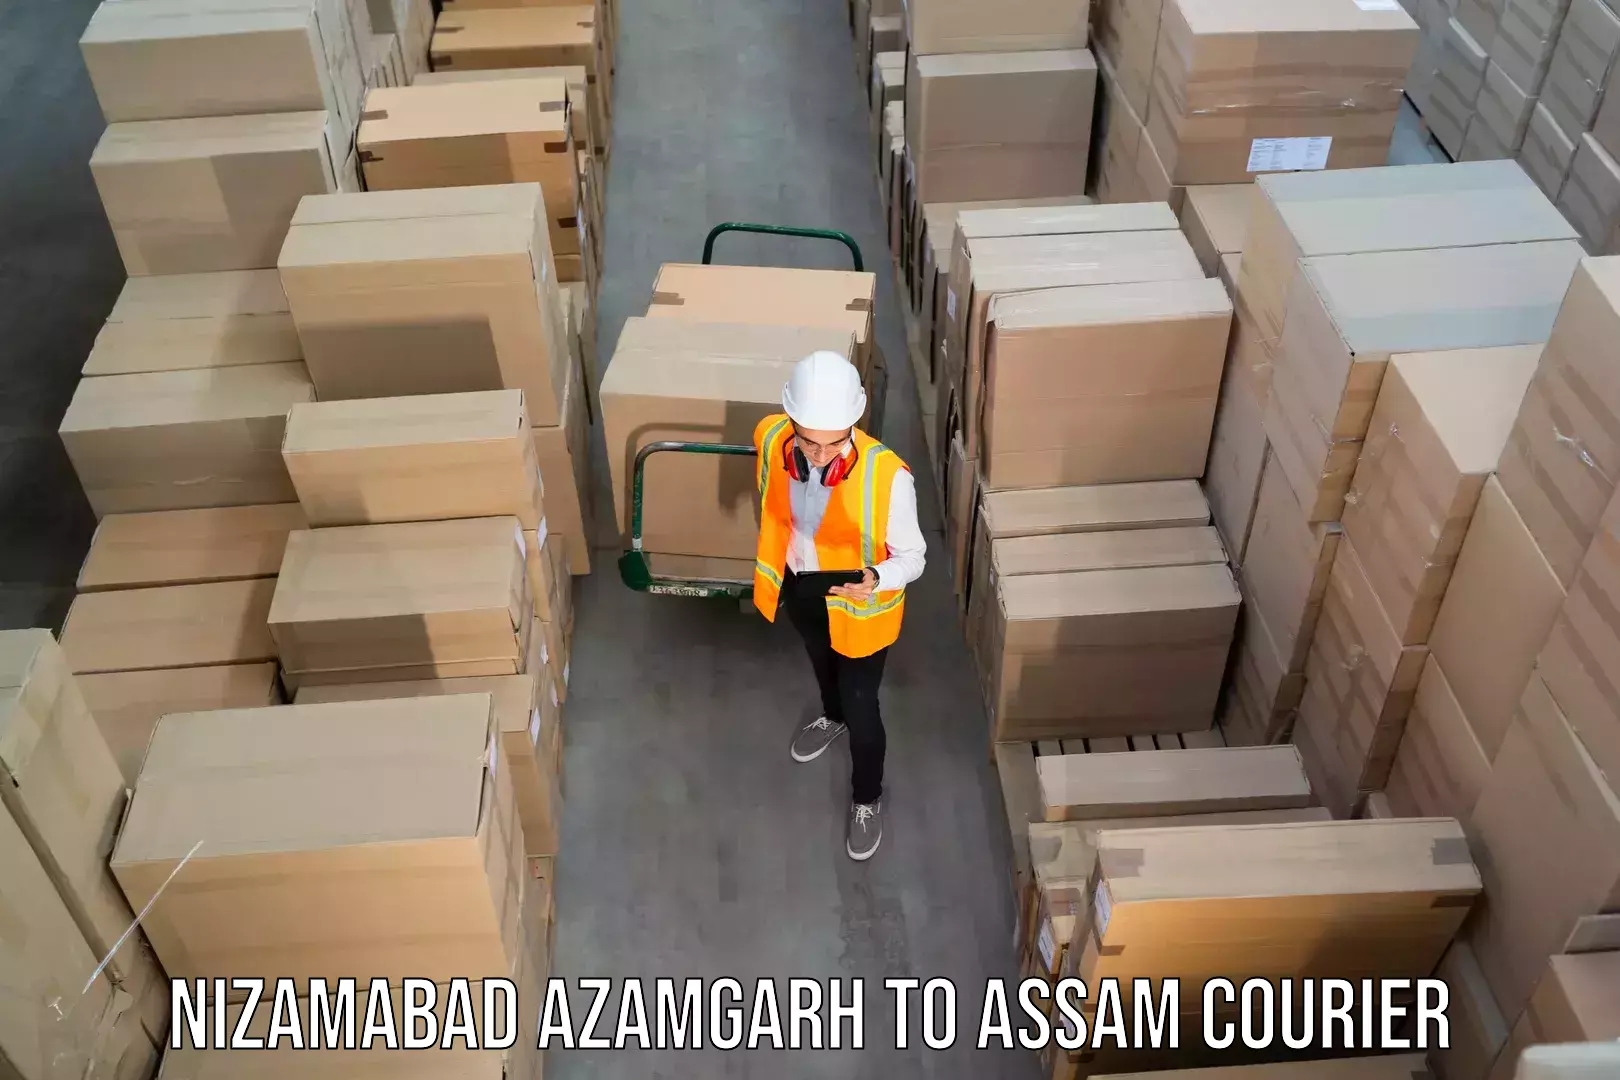 Professional courier handling Nizamabad Azamgarh to Agomani